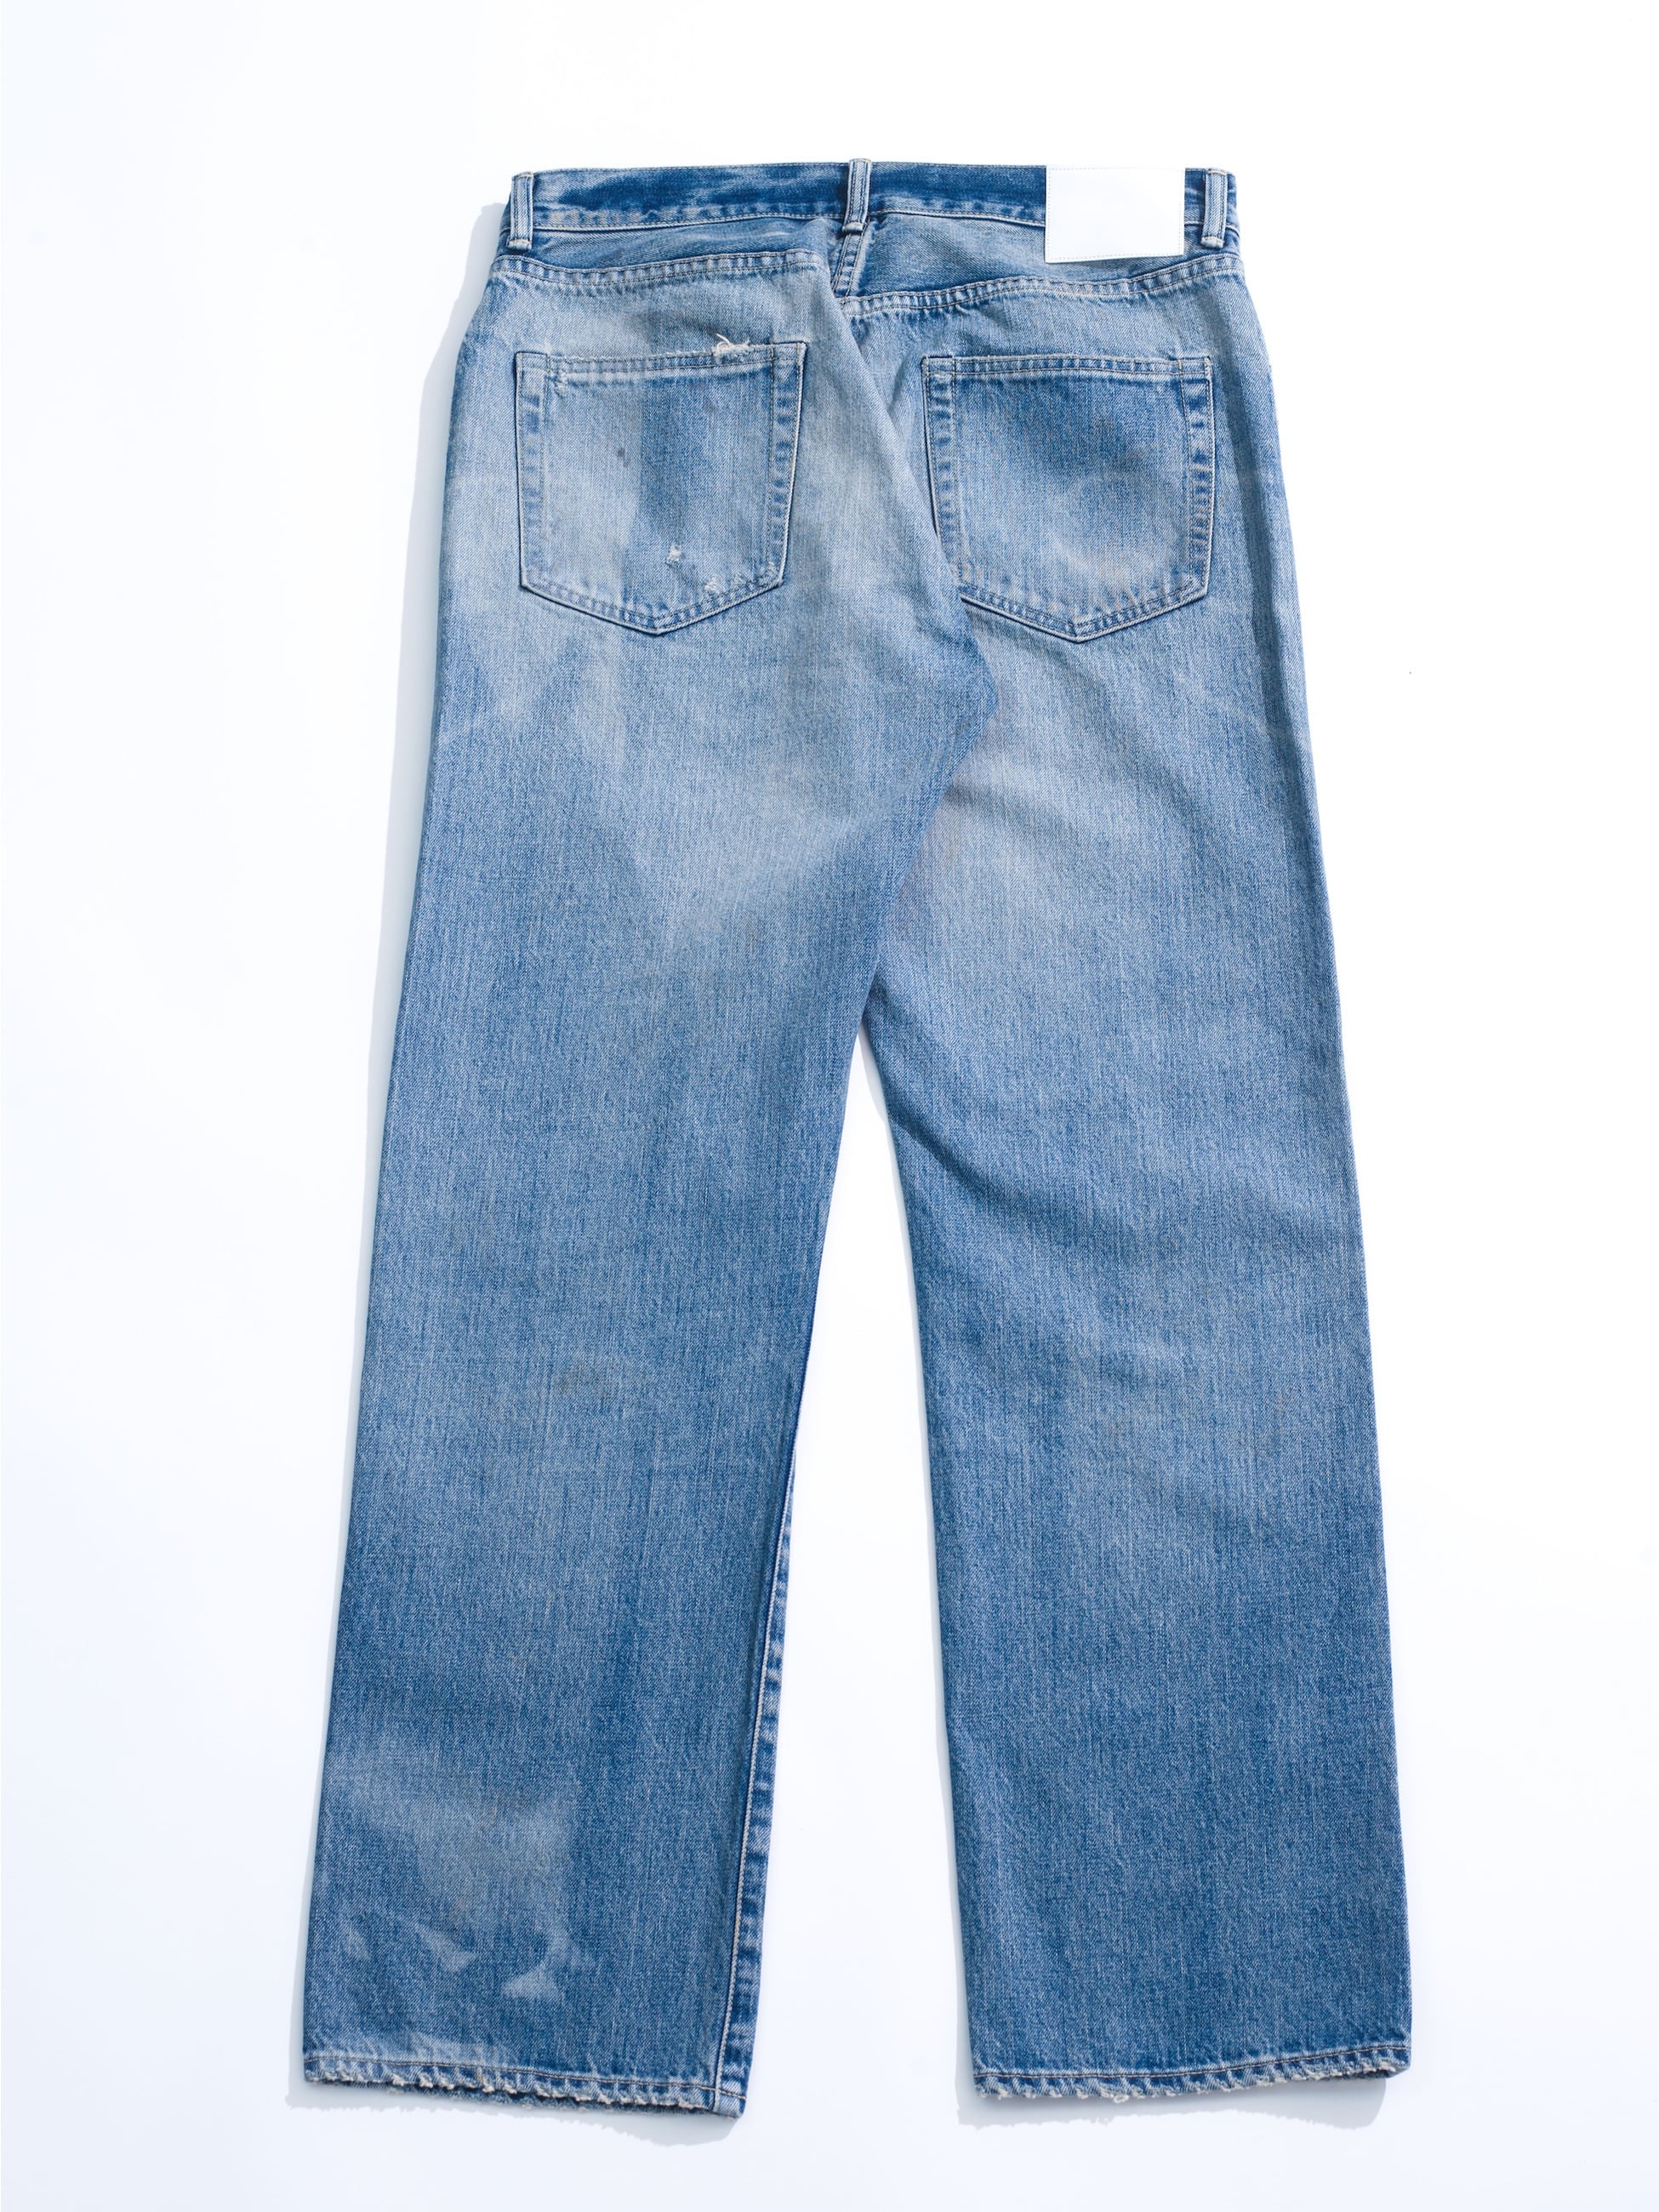 Nagoya Vintage Straight Fit Denim Pants｜Ron Herman DENIM(ロン 